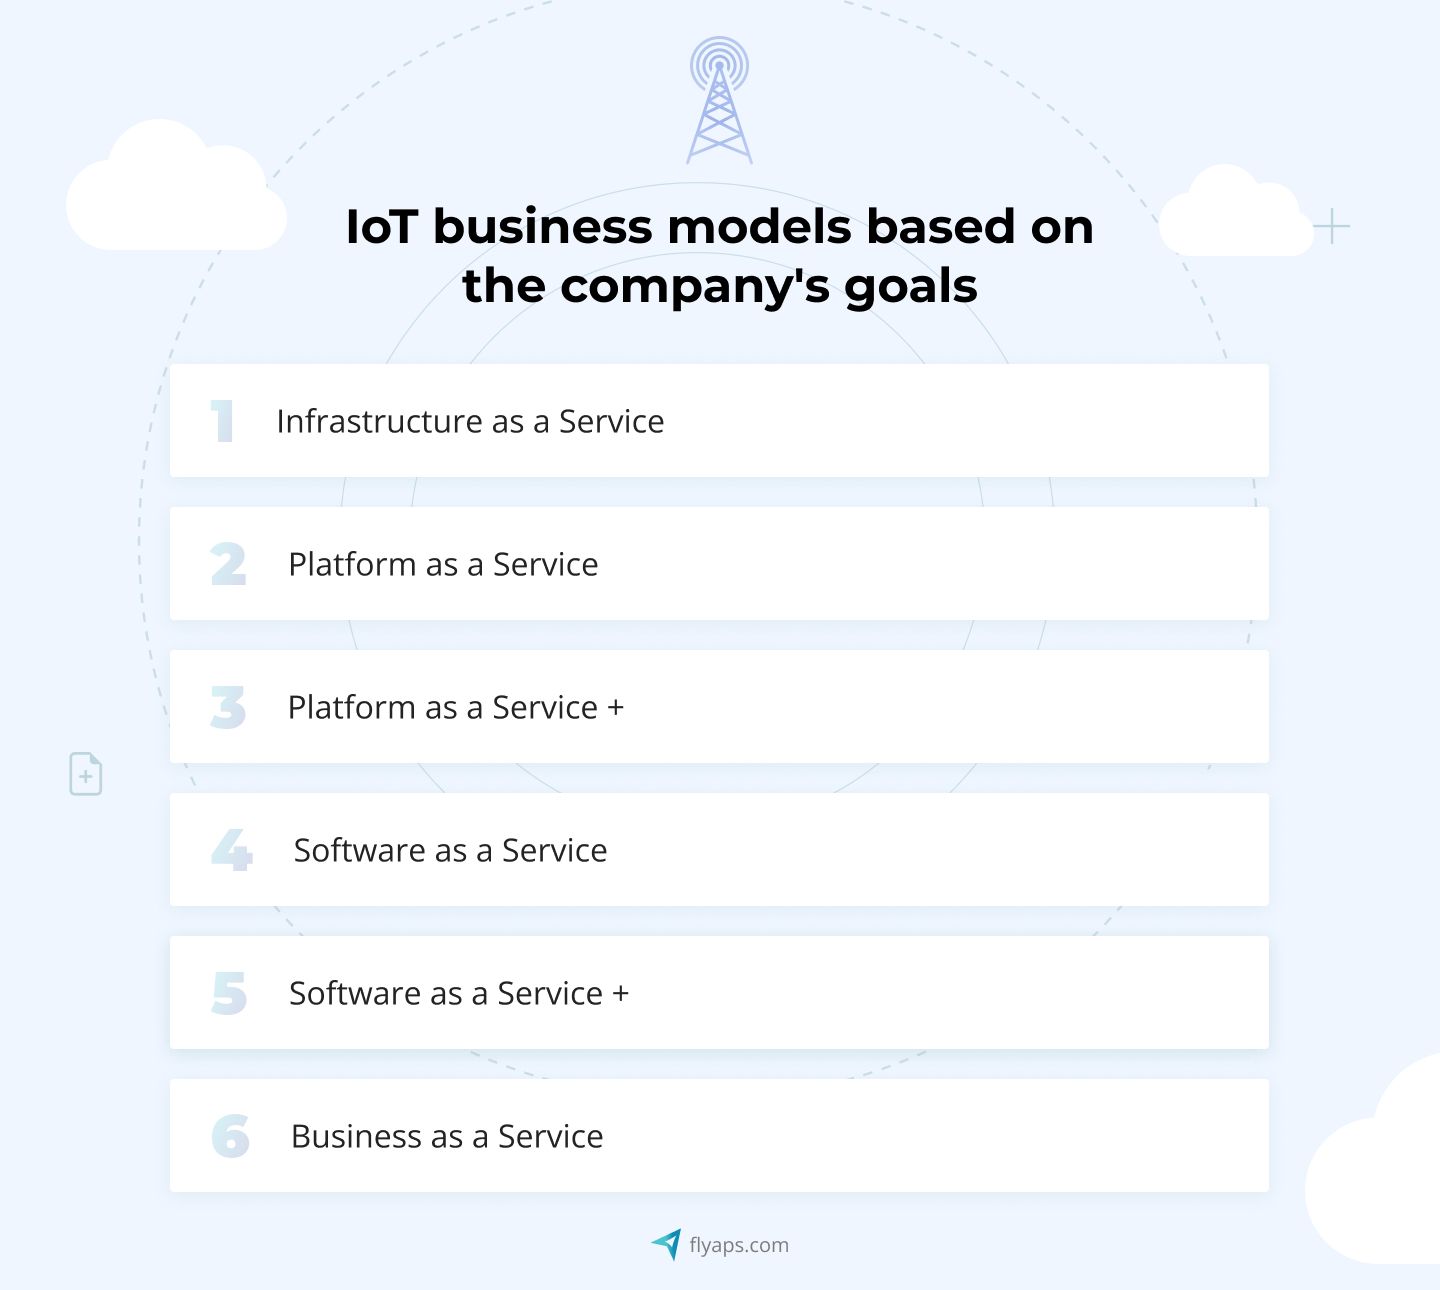 Telecom IoT business models